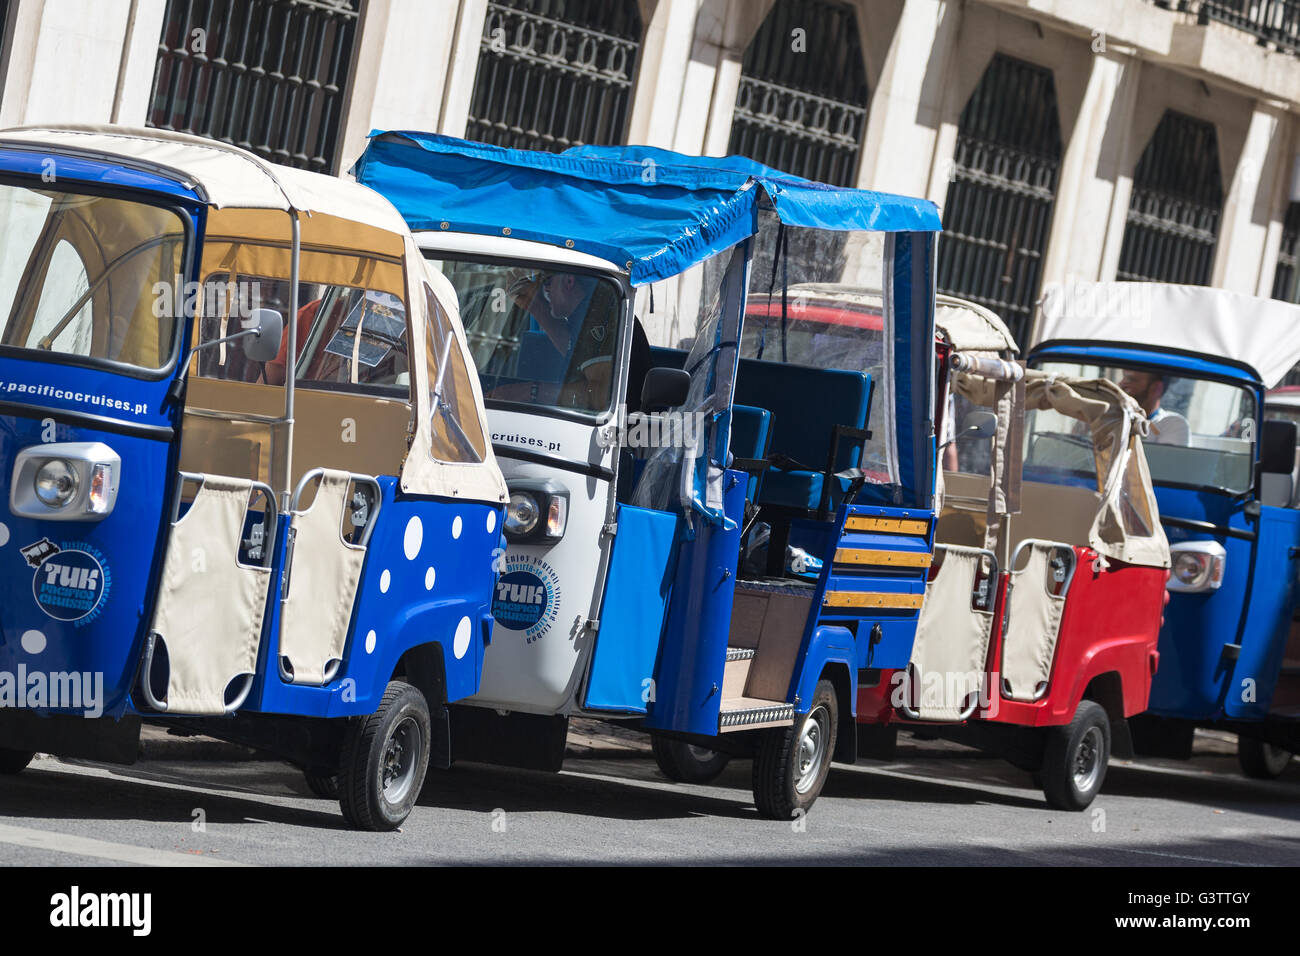 Le stationnement des véhicules sur le côté rue. Portugal Lisbonne. Banque D'Images